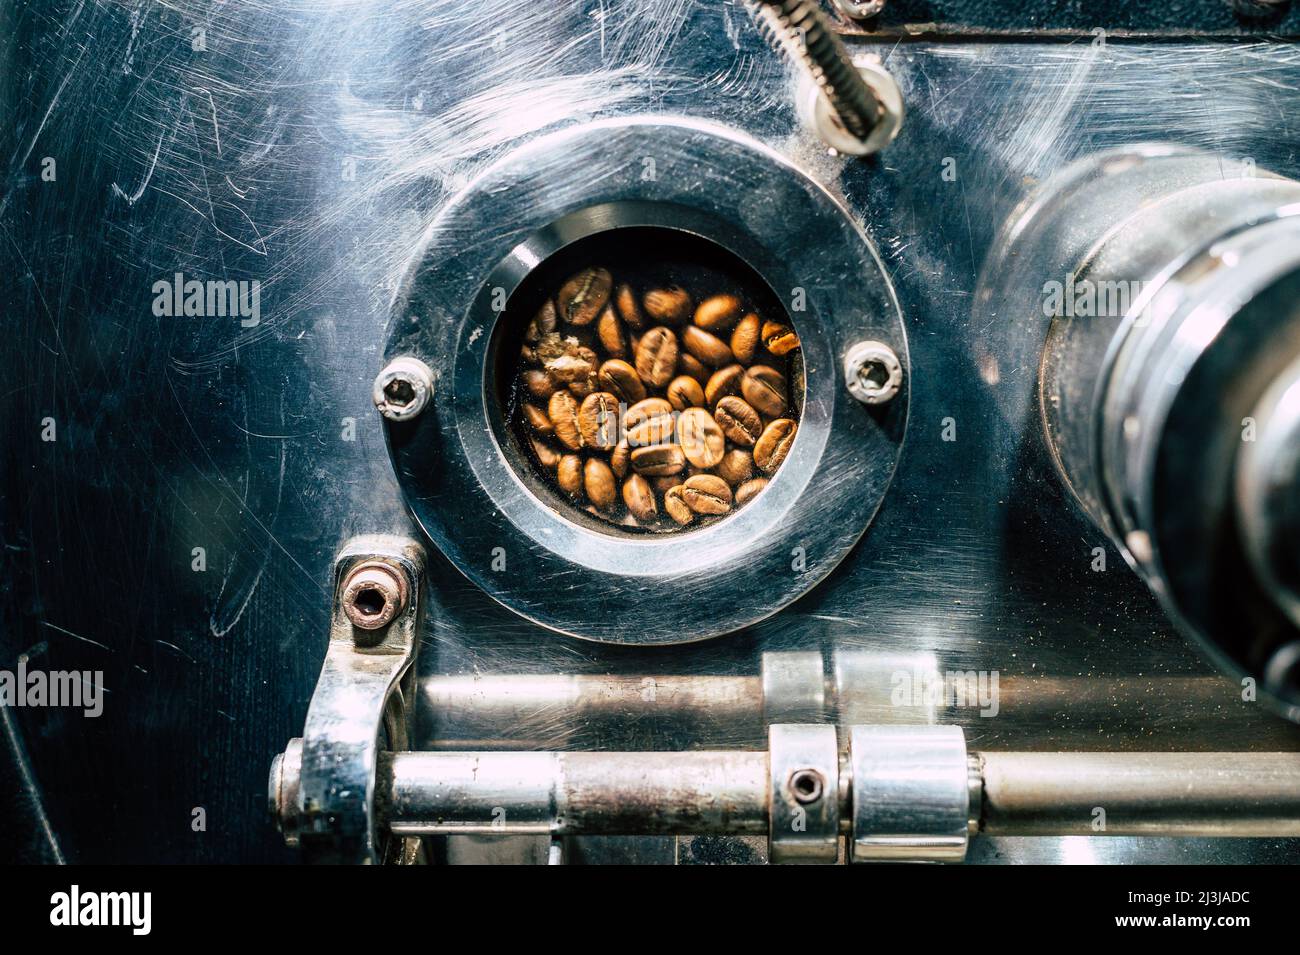 Les grains de café tournent dans une machine à rôtir à grains de café Banque D'Images